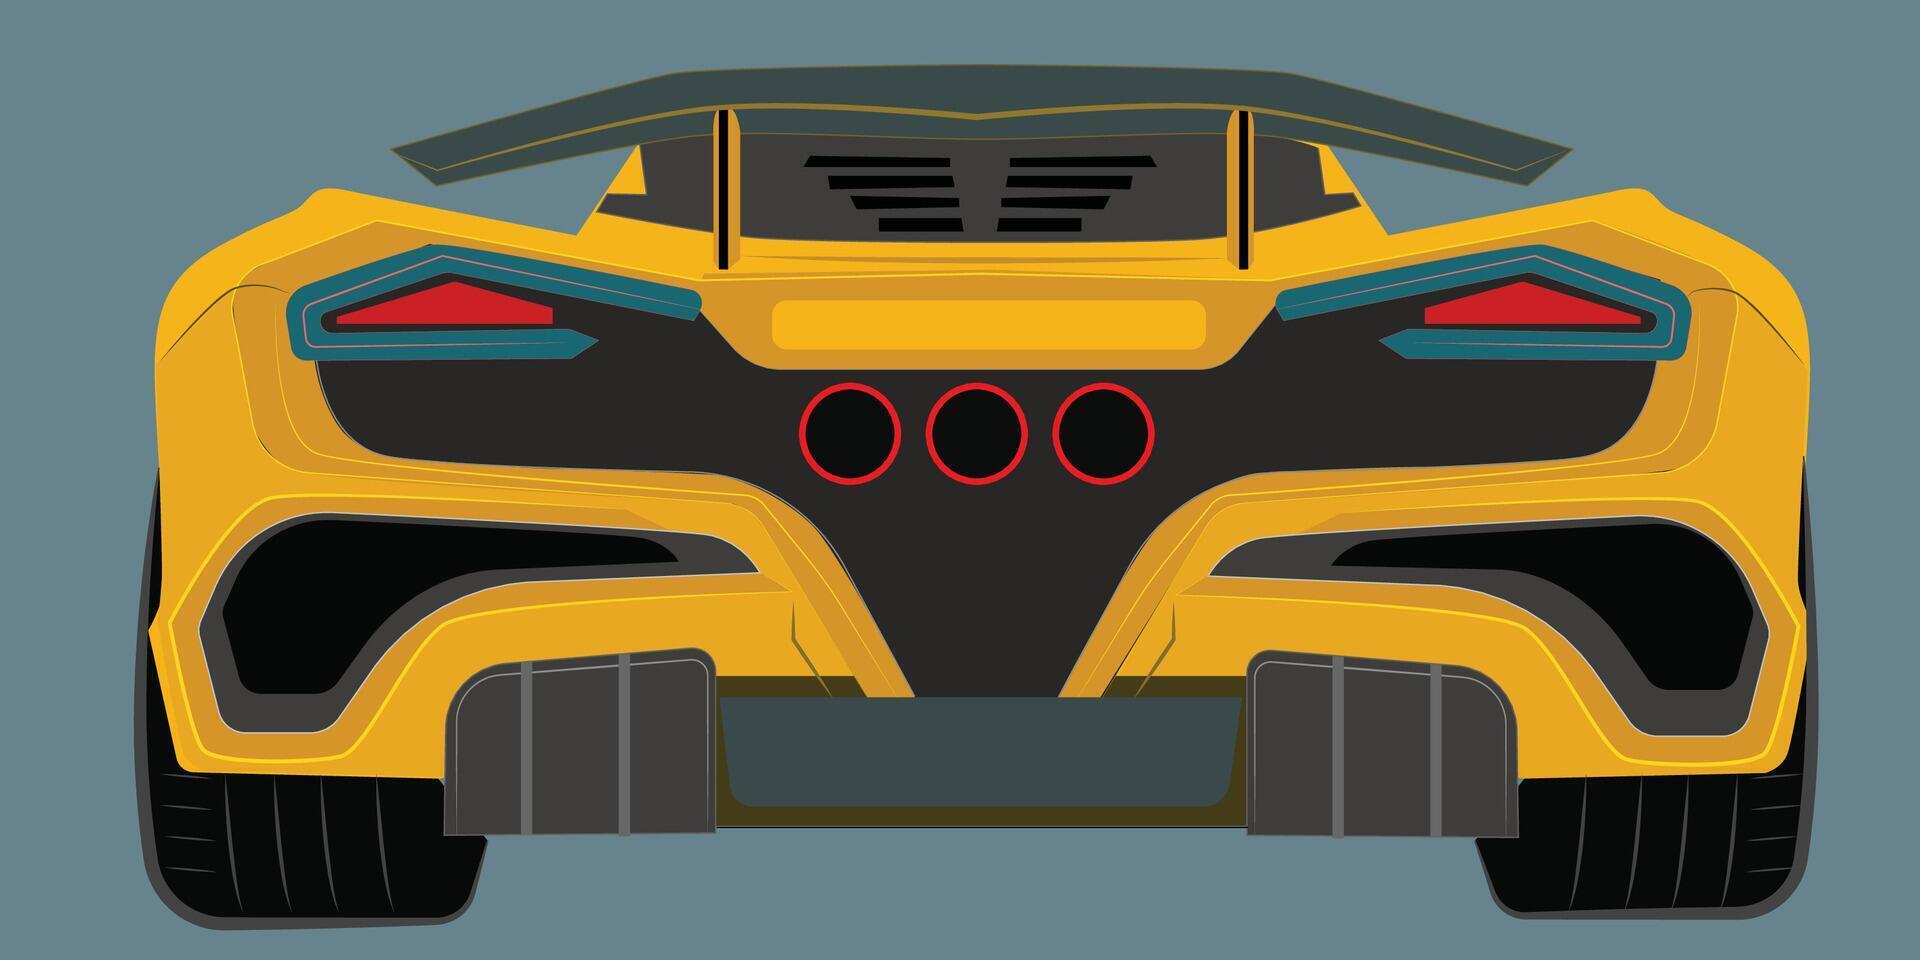 Vektor realistisch Entwurf von ein Super Auto im Gelb mit Gradient und Transparenz, Rückseite Sicht. modern Autos. heftig Wagen.